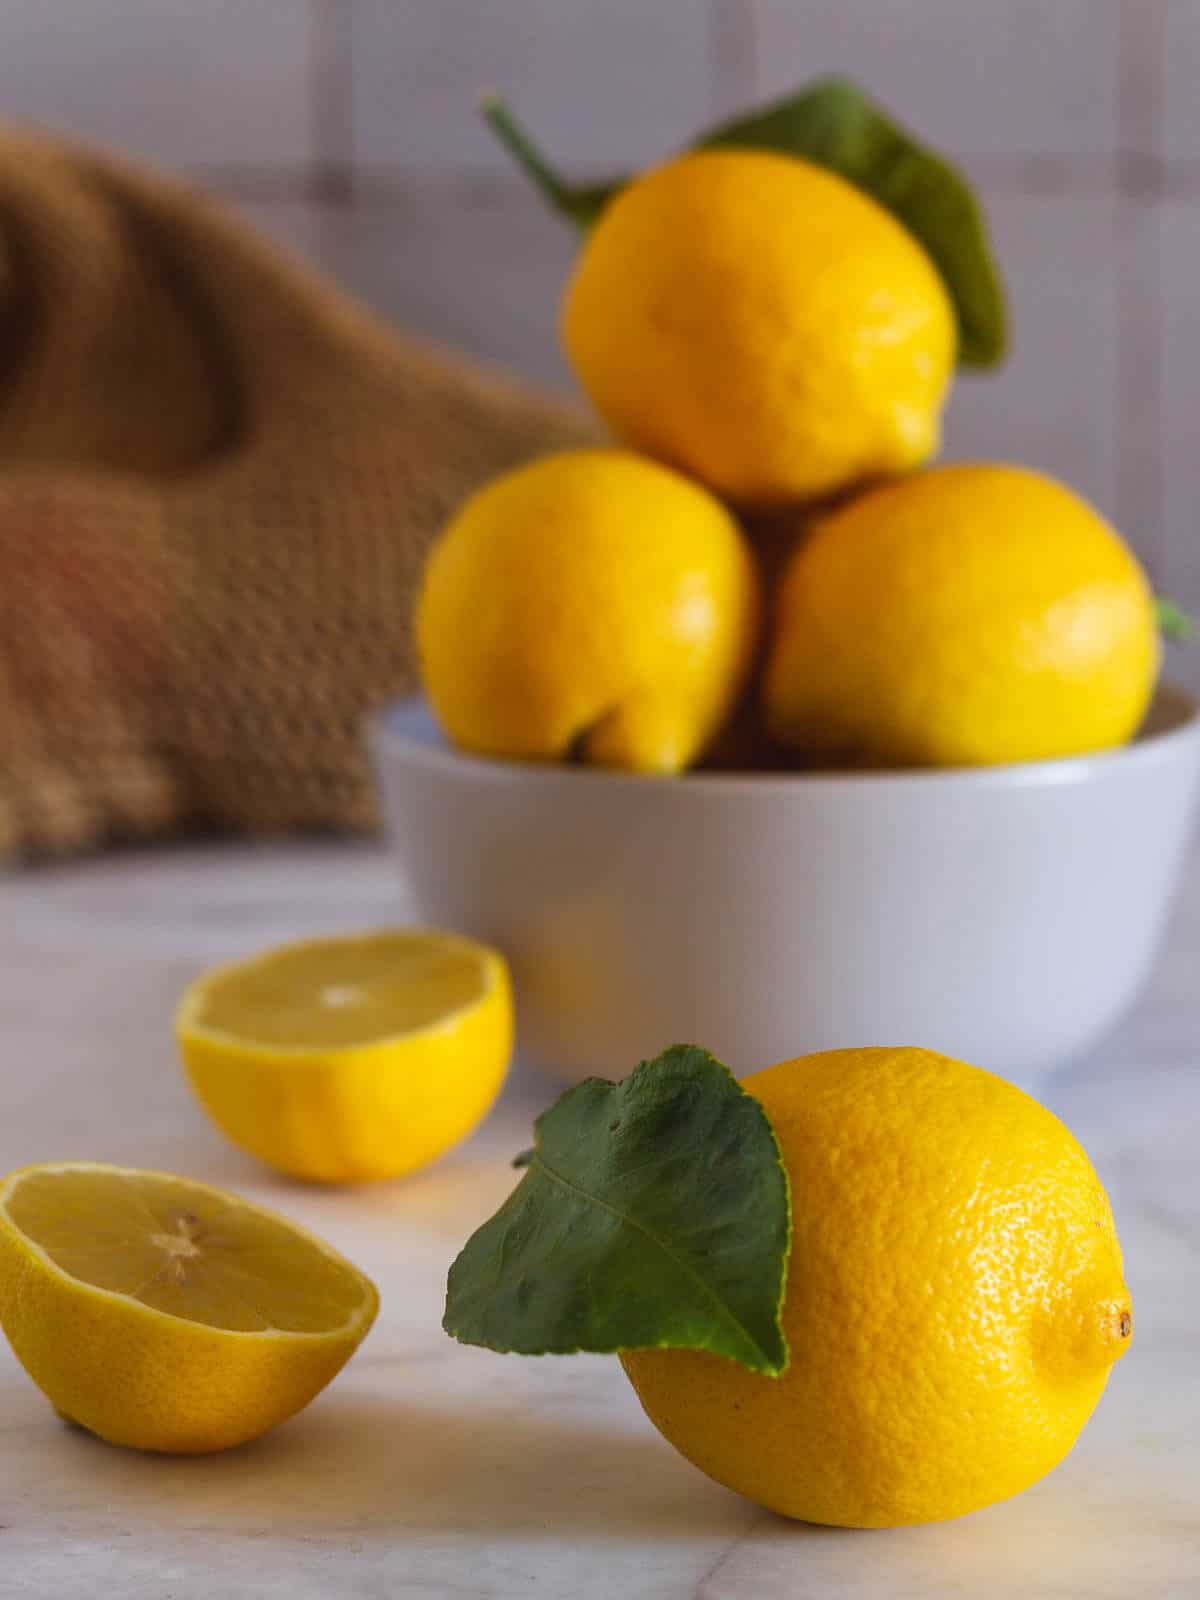 bowl con limones enteros y dos sobre la mesa.